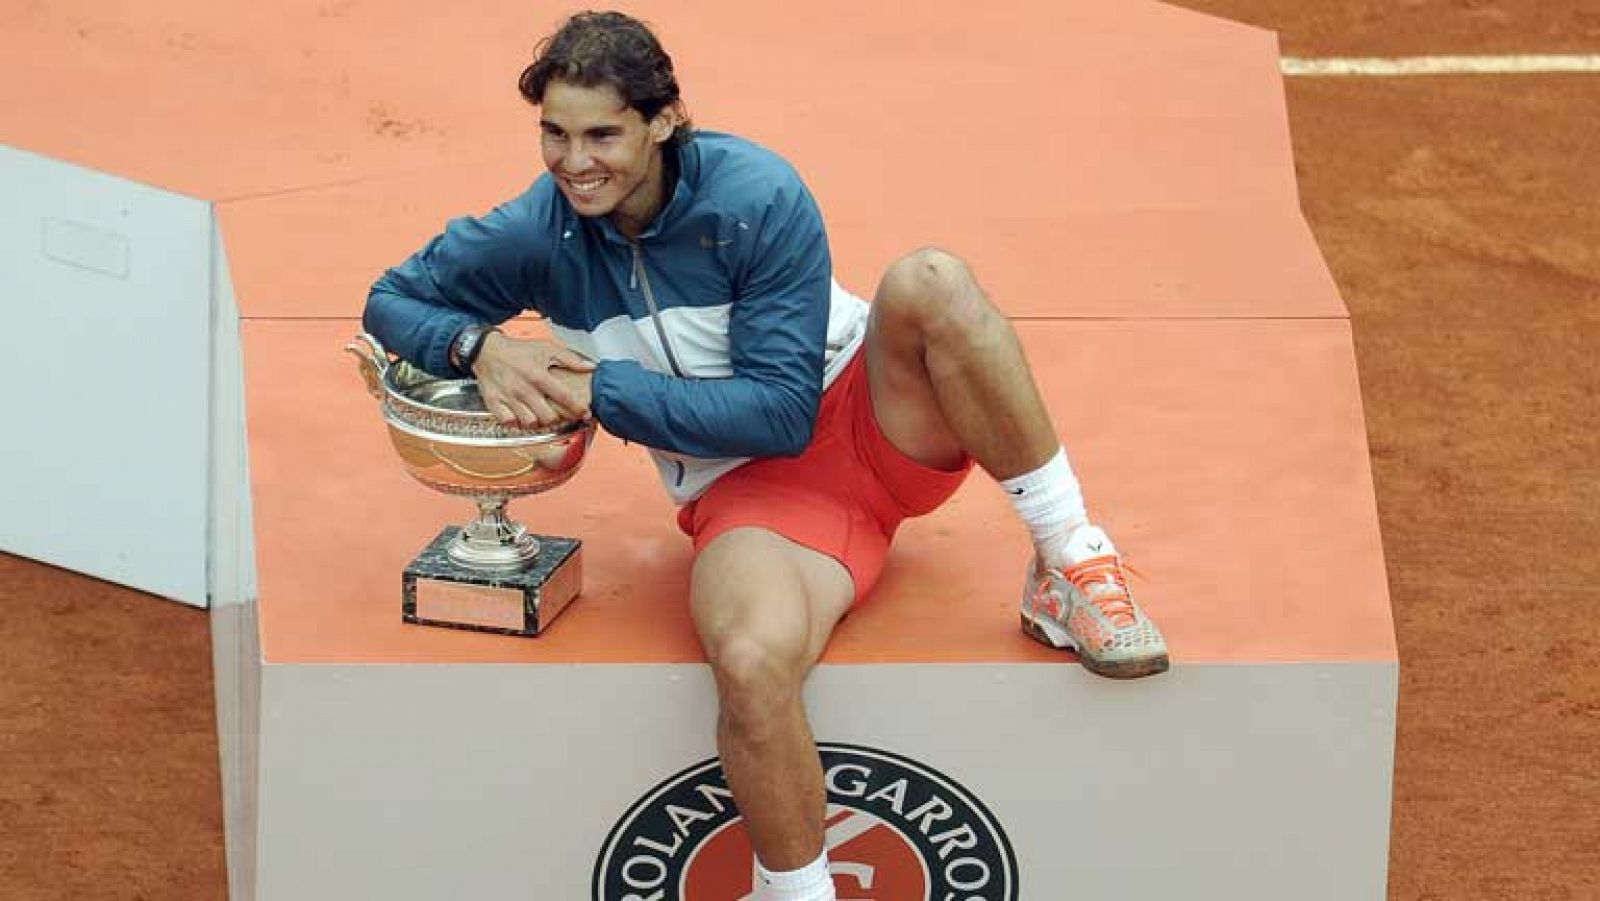 La leyenda de Rafa Nadal crece y crece. Tiene a tiro convertirse en el mejor tenista de todos los tiempos, está cerca de alcanzar a Sampras y Federer. Hoy Nadal es portada en los periódicos de casi todo el mundo después conseguir algo sin precedentes